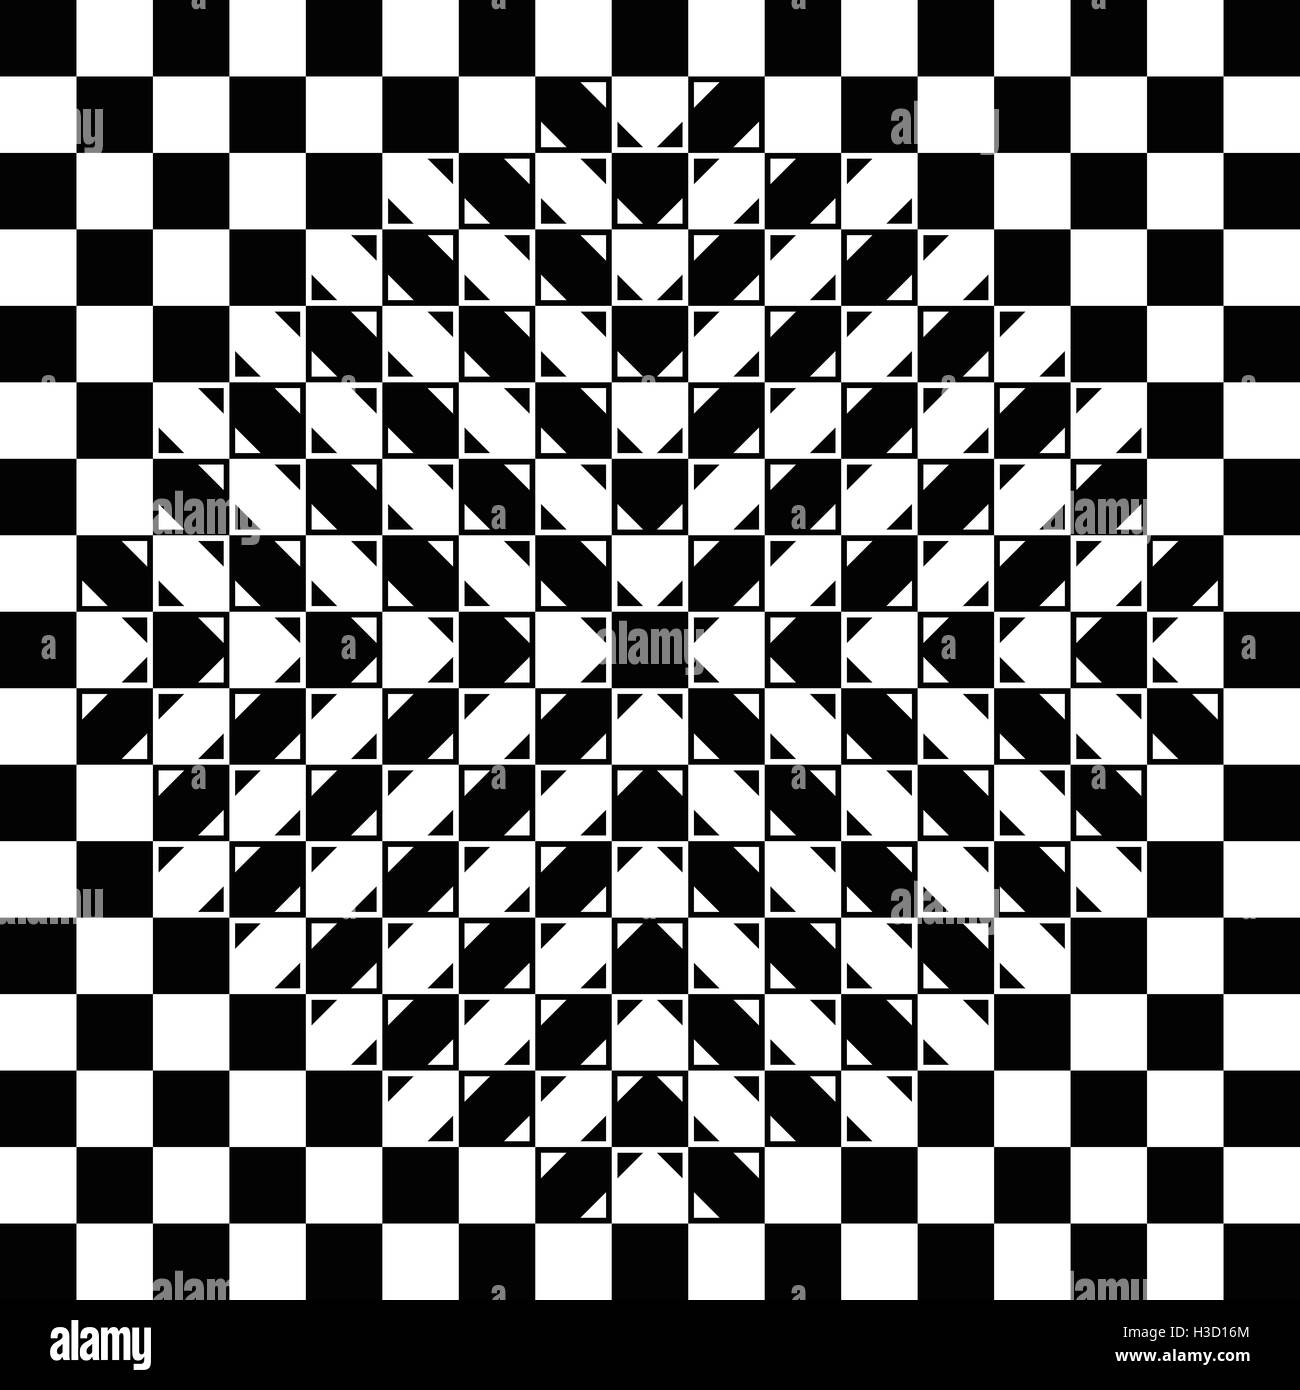 Il rigonfiamento scacchiera illusione. La scacchiera è completamente regolare, ogni controllo è un quadrato e il rigonfiamento è un'illusione. Foto Stock